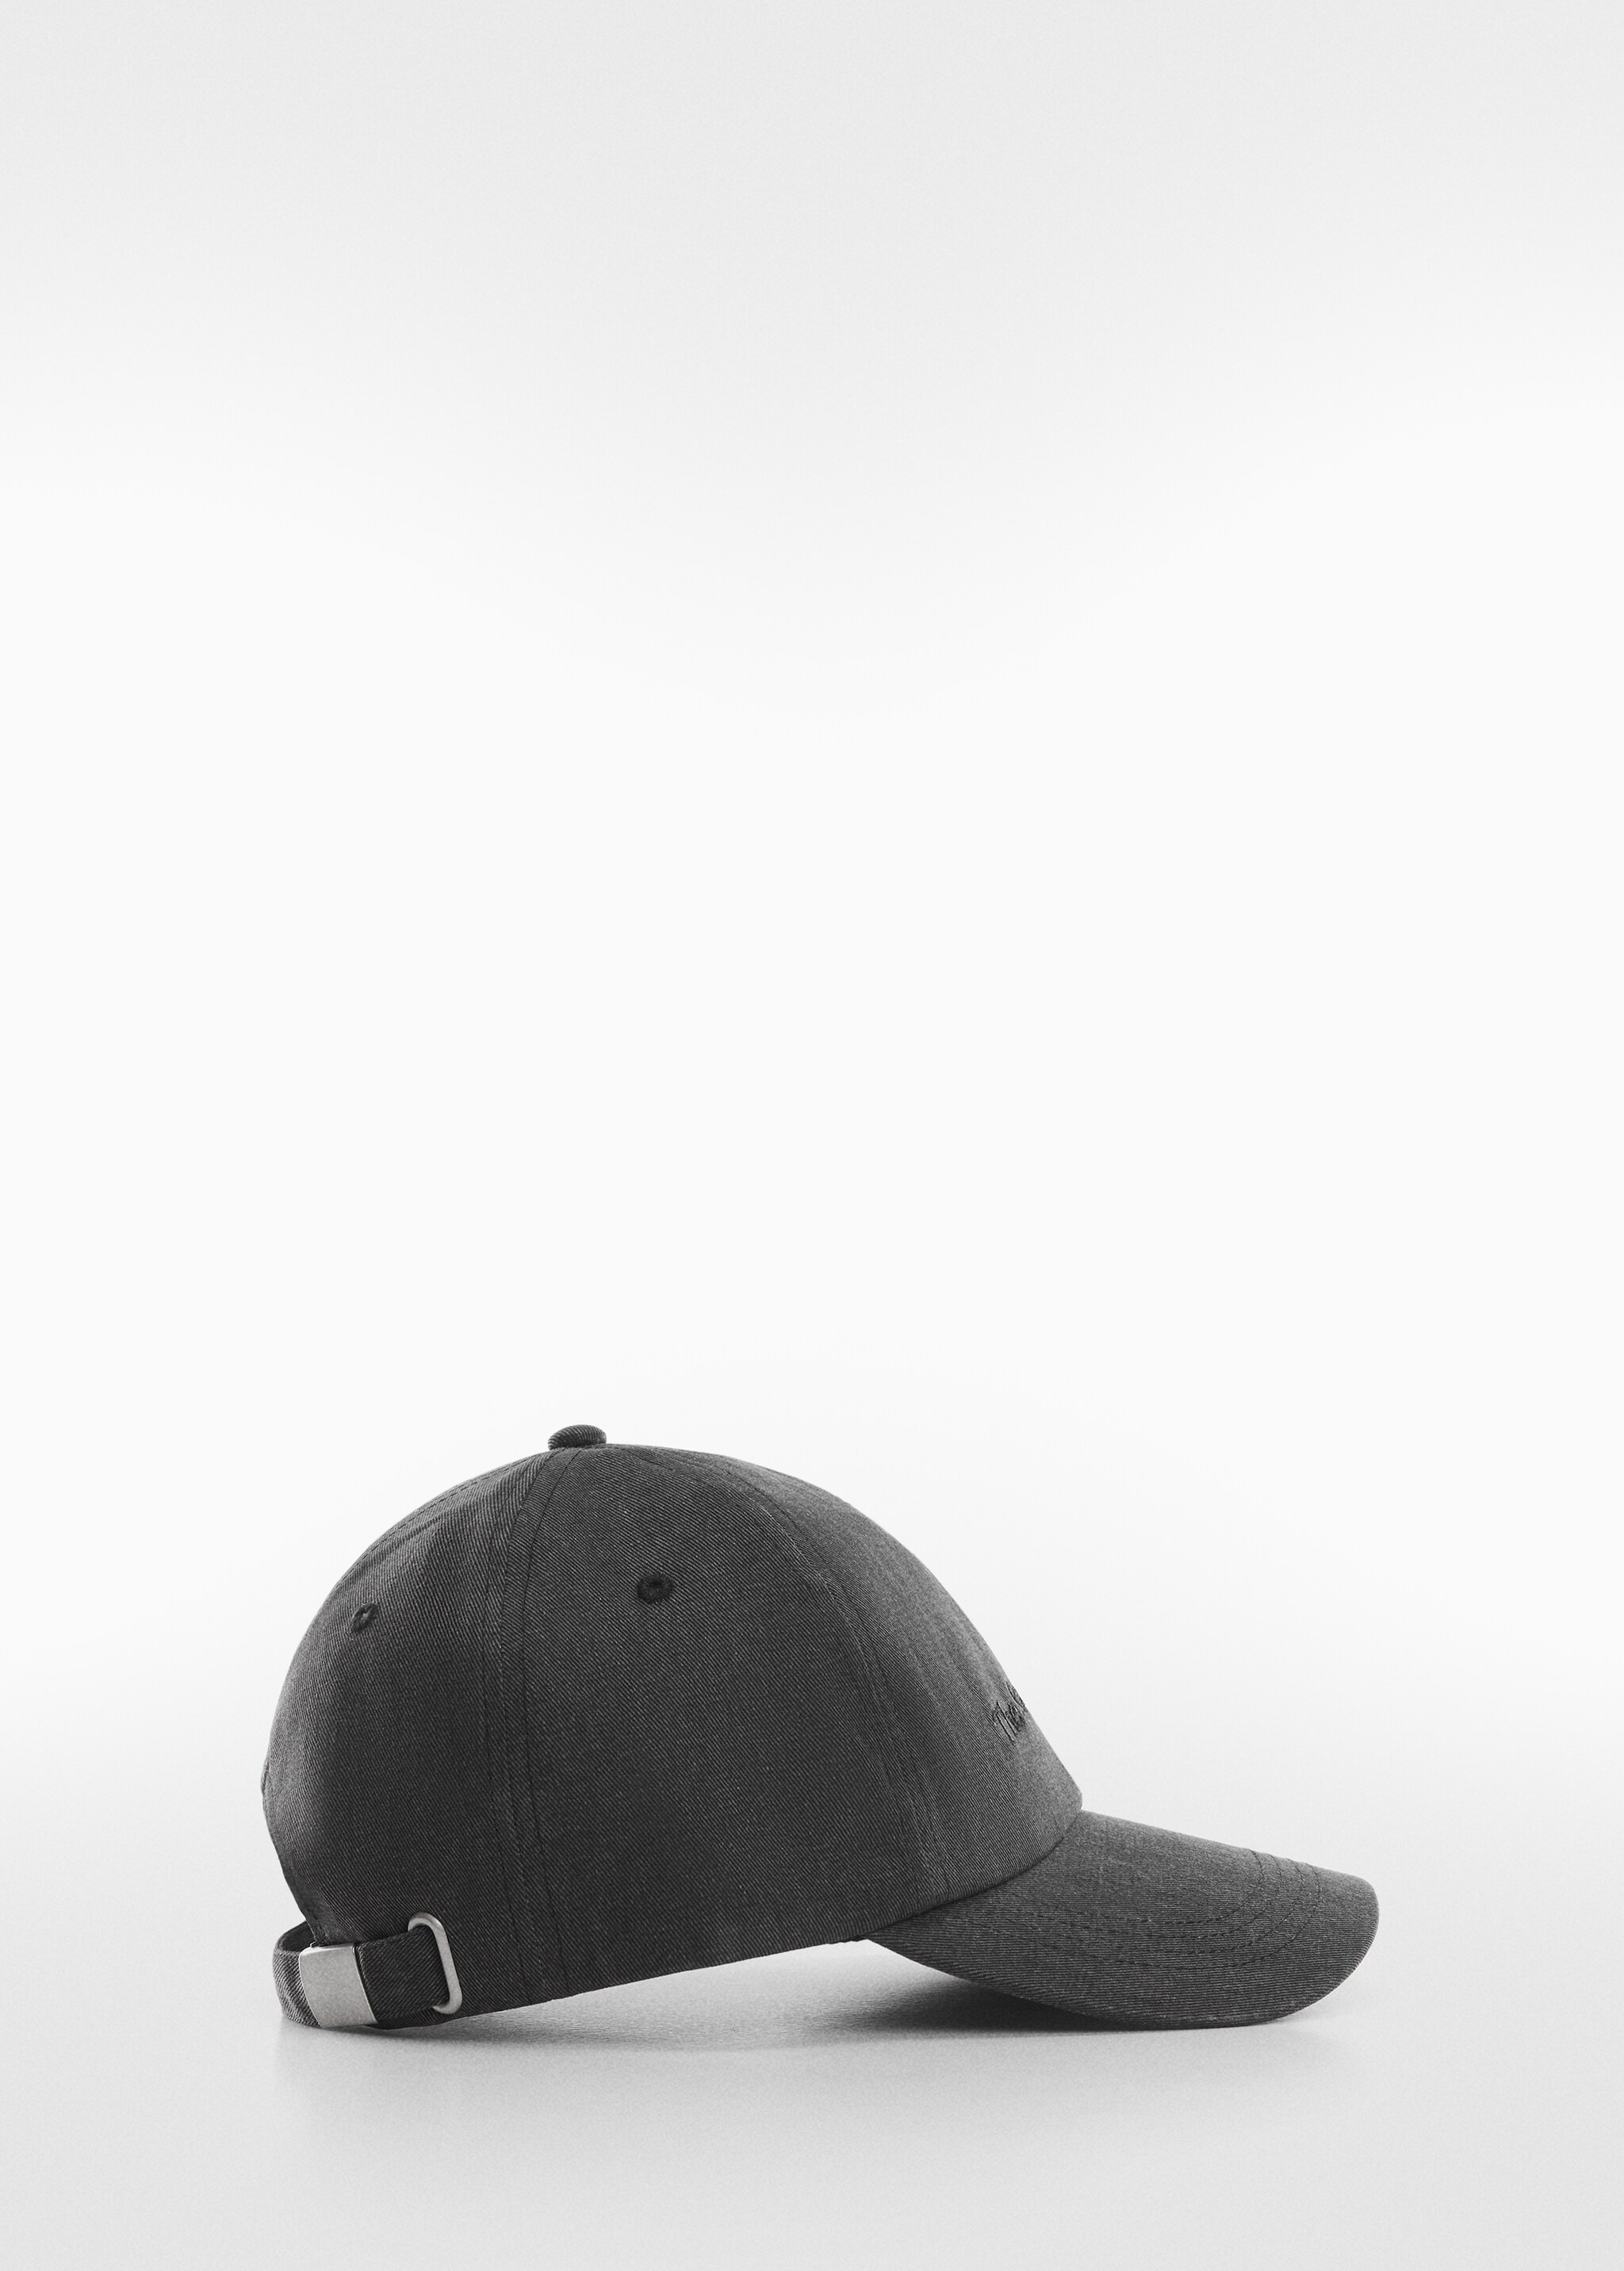 Yazılı kot şapka - Modelsiz ürün